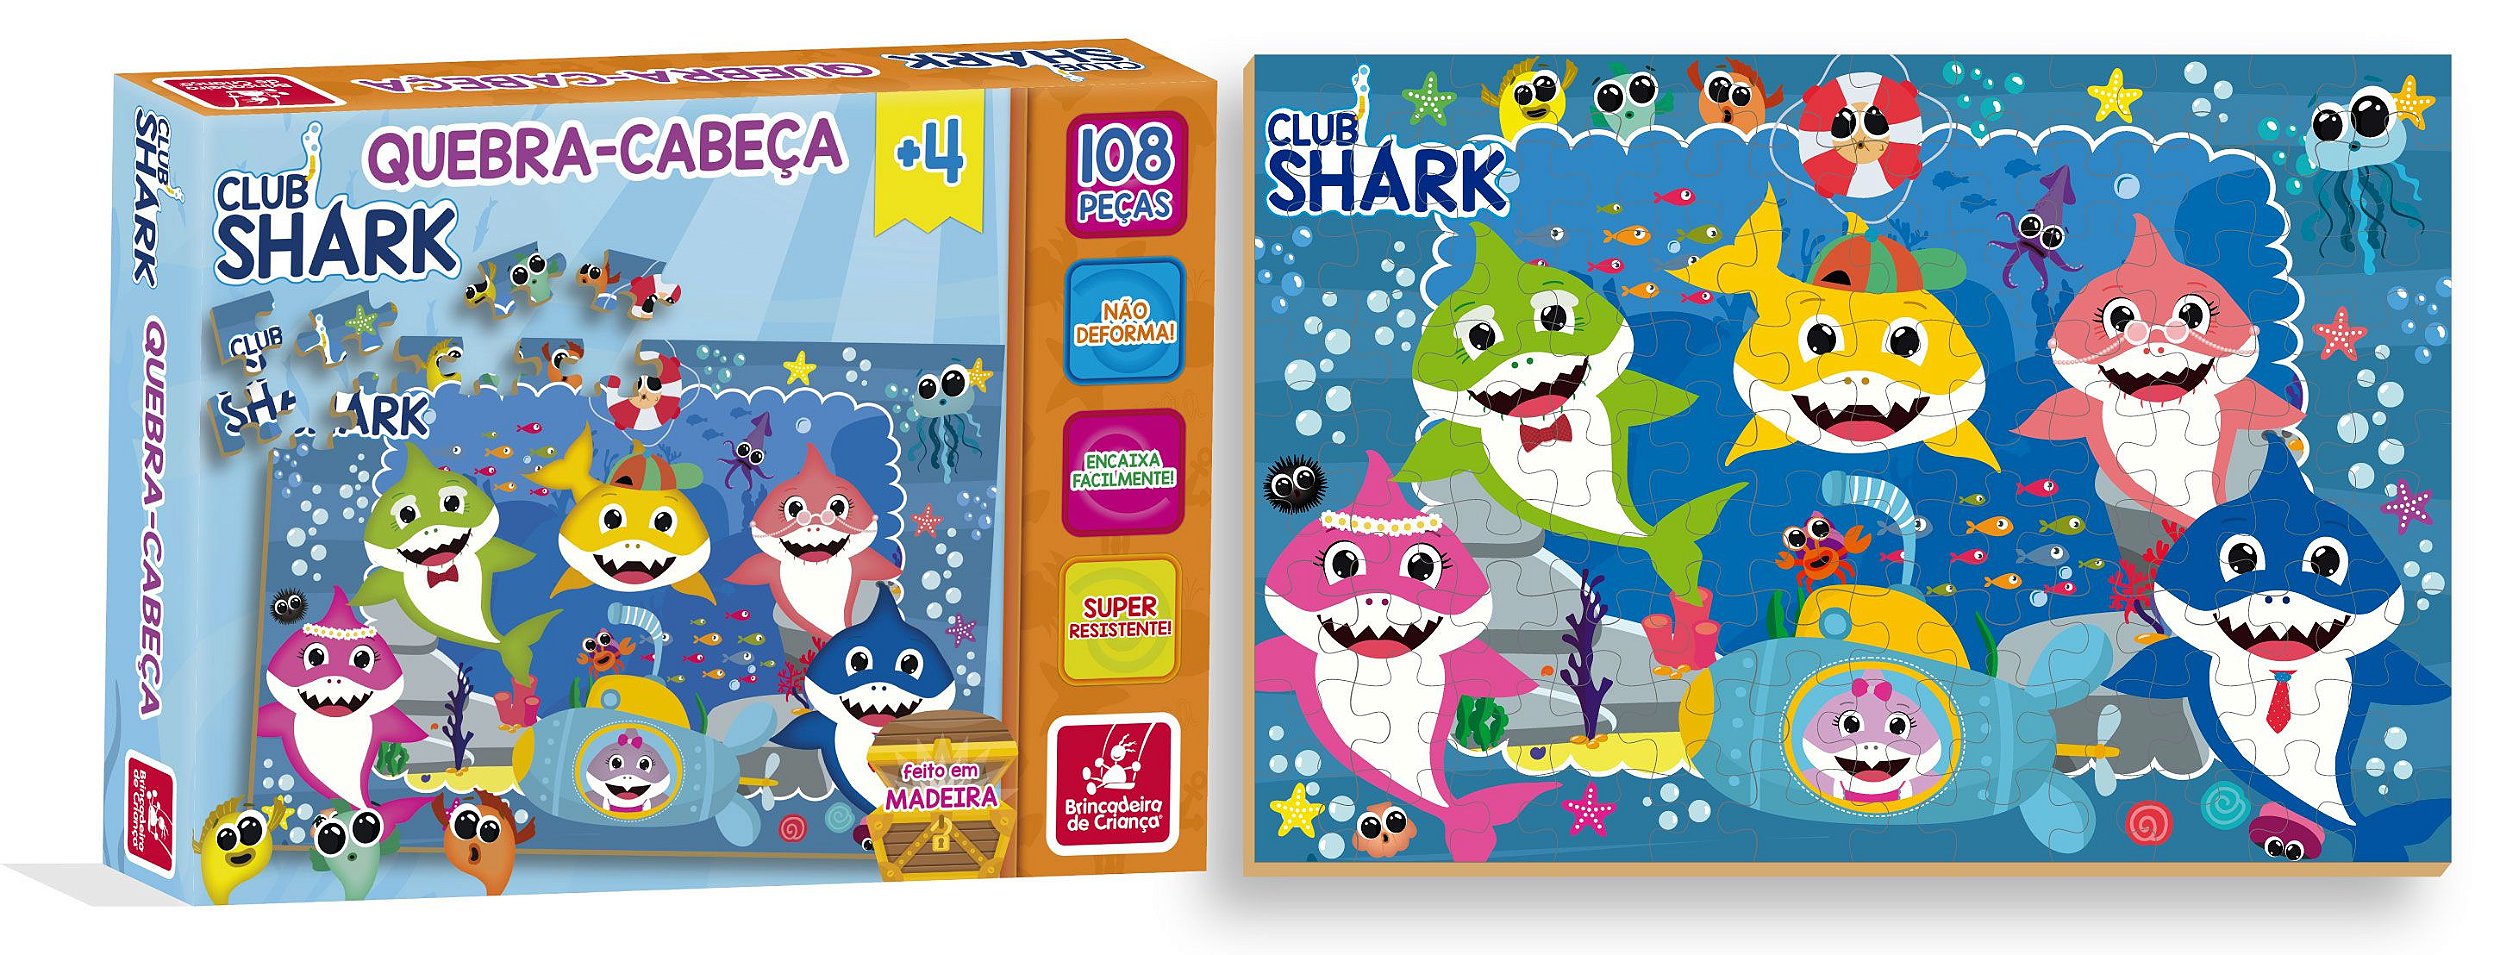 Quebra-Cabeça Club Shark 48 pçs - 2345 - Brincadeira de Criança